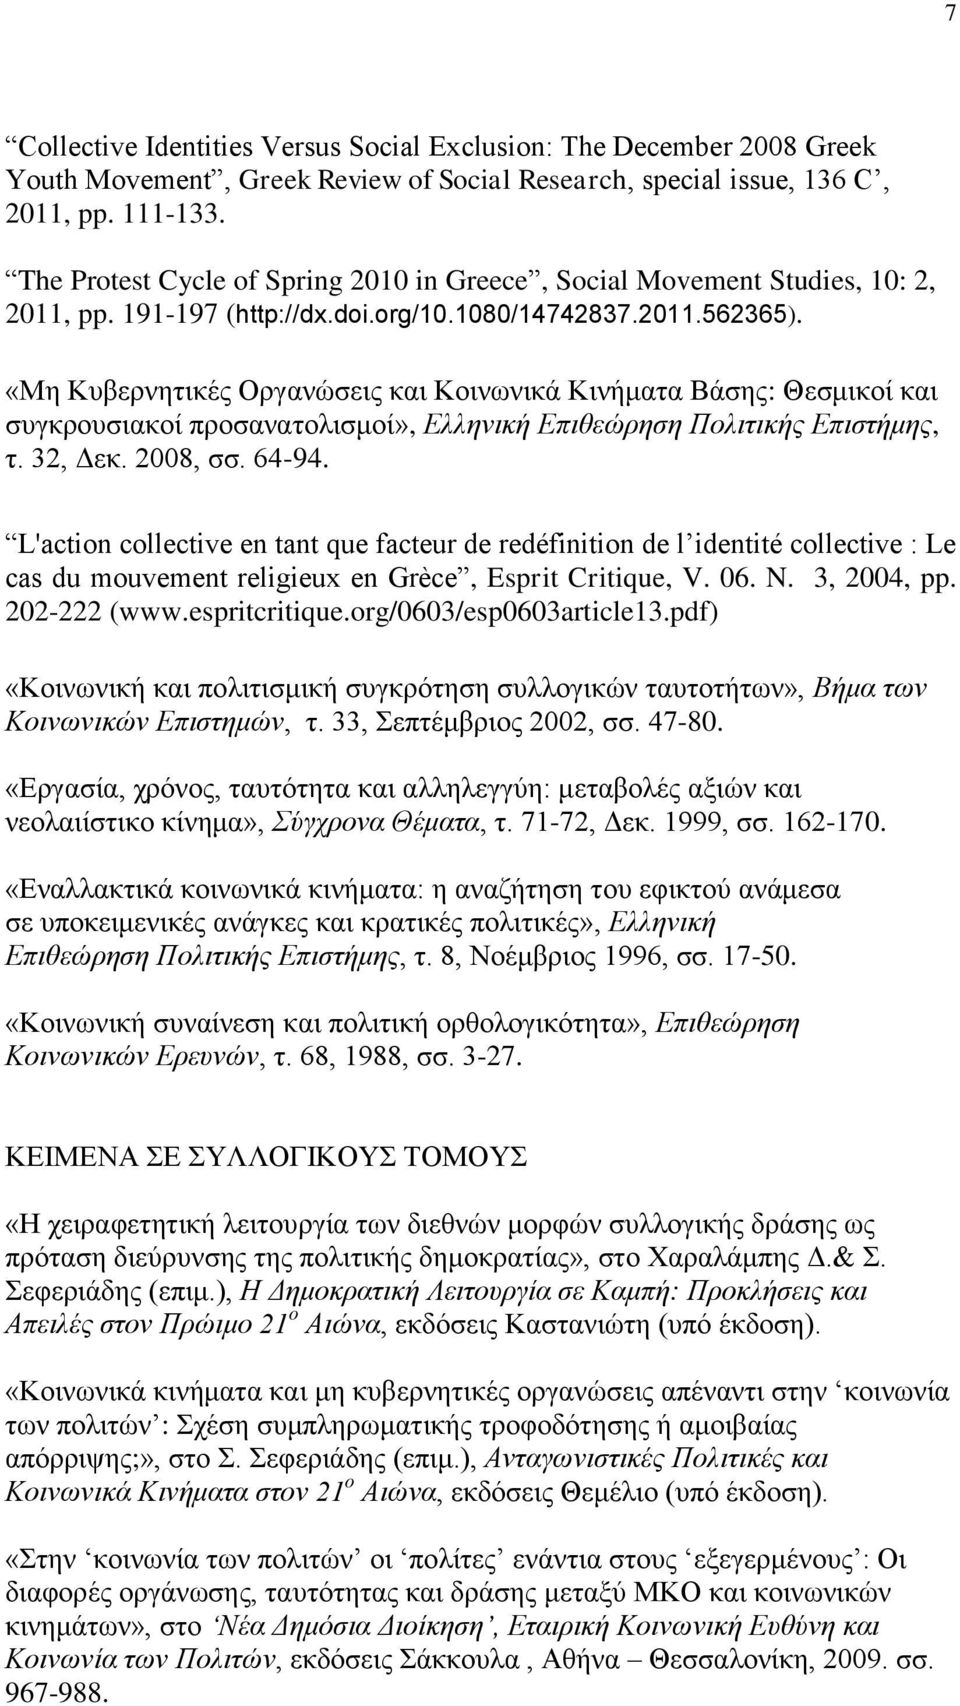 «Μη Κυβερνητικές Οργανώσεις και Κοινωνικά Κινήματα Βάσης: Θεσμικοί και συγκρουσιακοί προσανατολισμοί», Ελληνική Επιθεώρηση Πολιτικής Επιστήμης, τ. 32, Δεκ. 2008, σσ. 64-94.